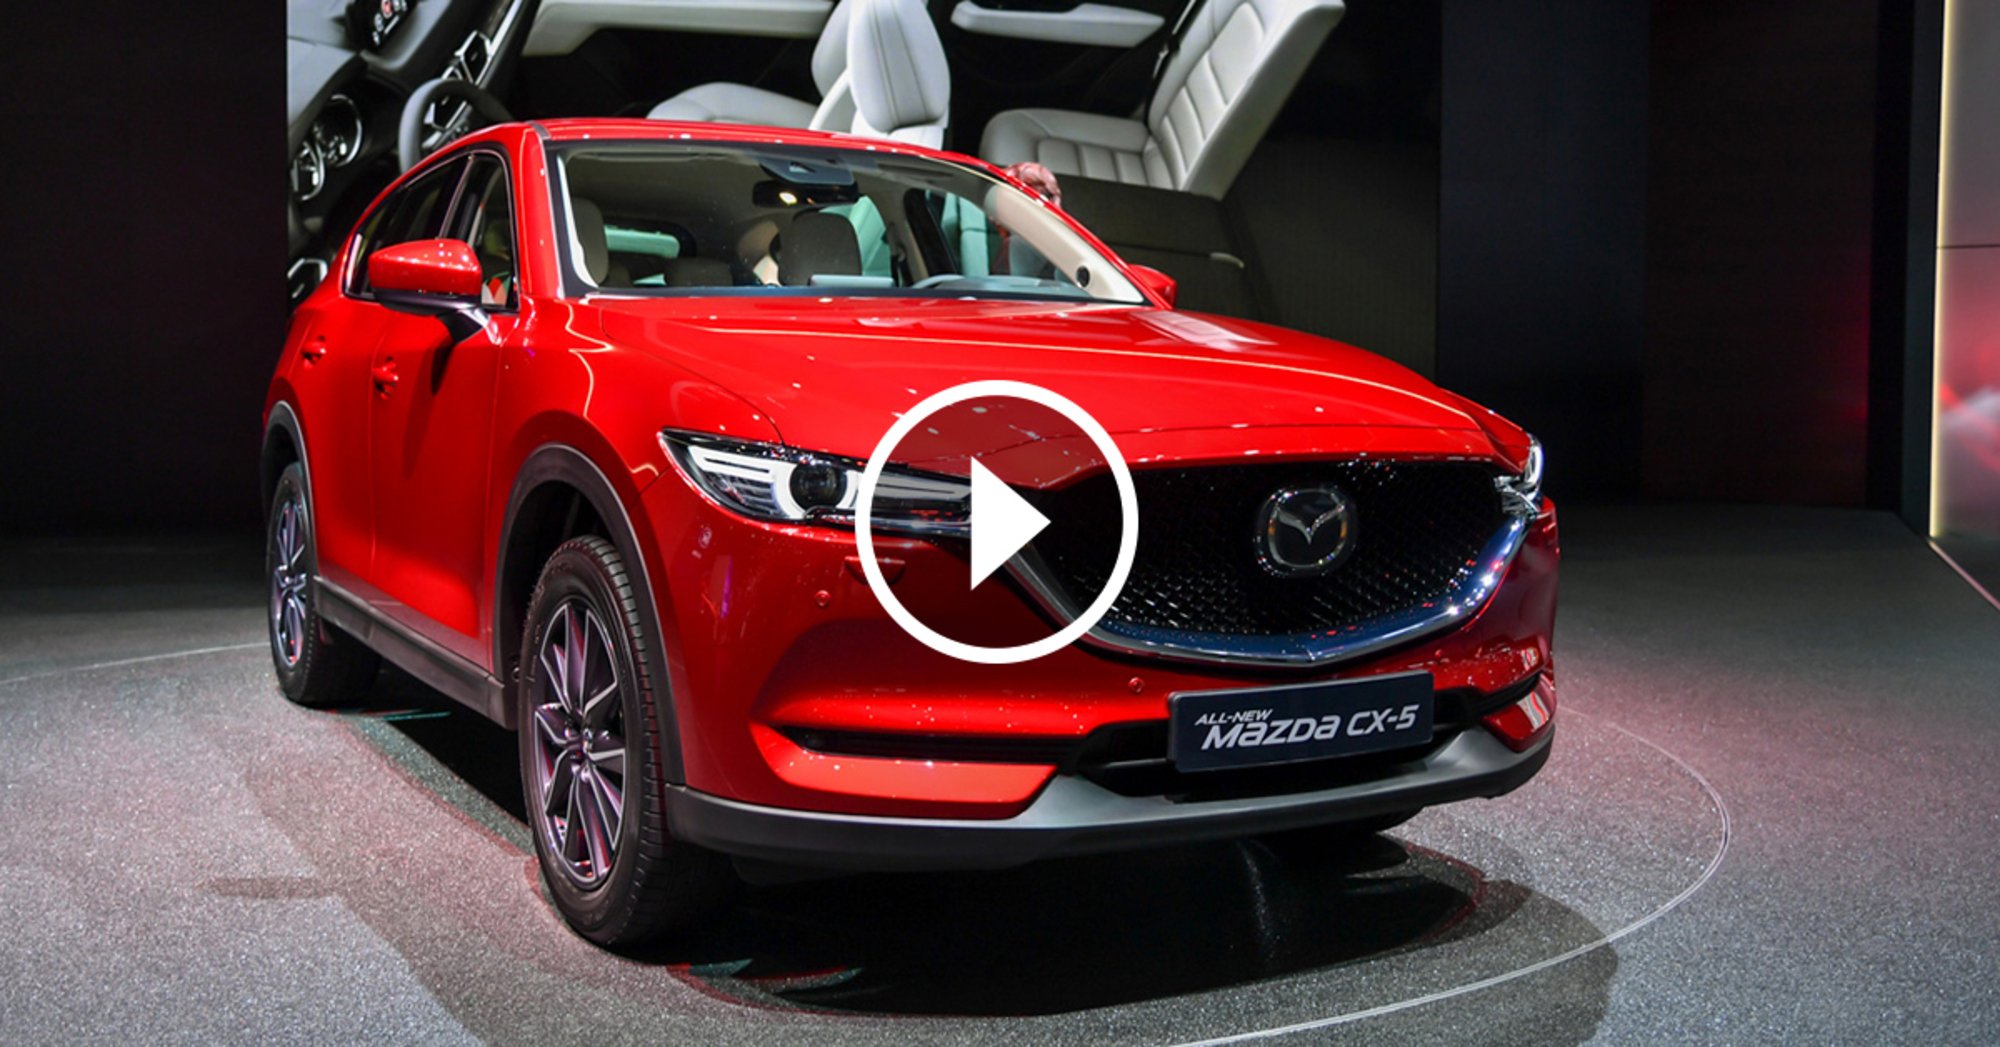 Nuova Mazda CX-5, la videorecensione al Salone di Ginevra 2017 [Video]